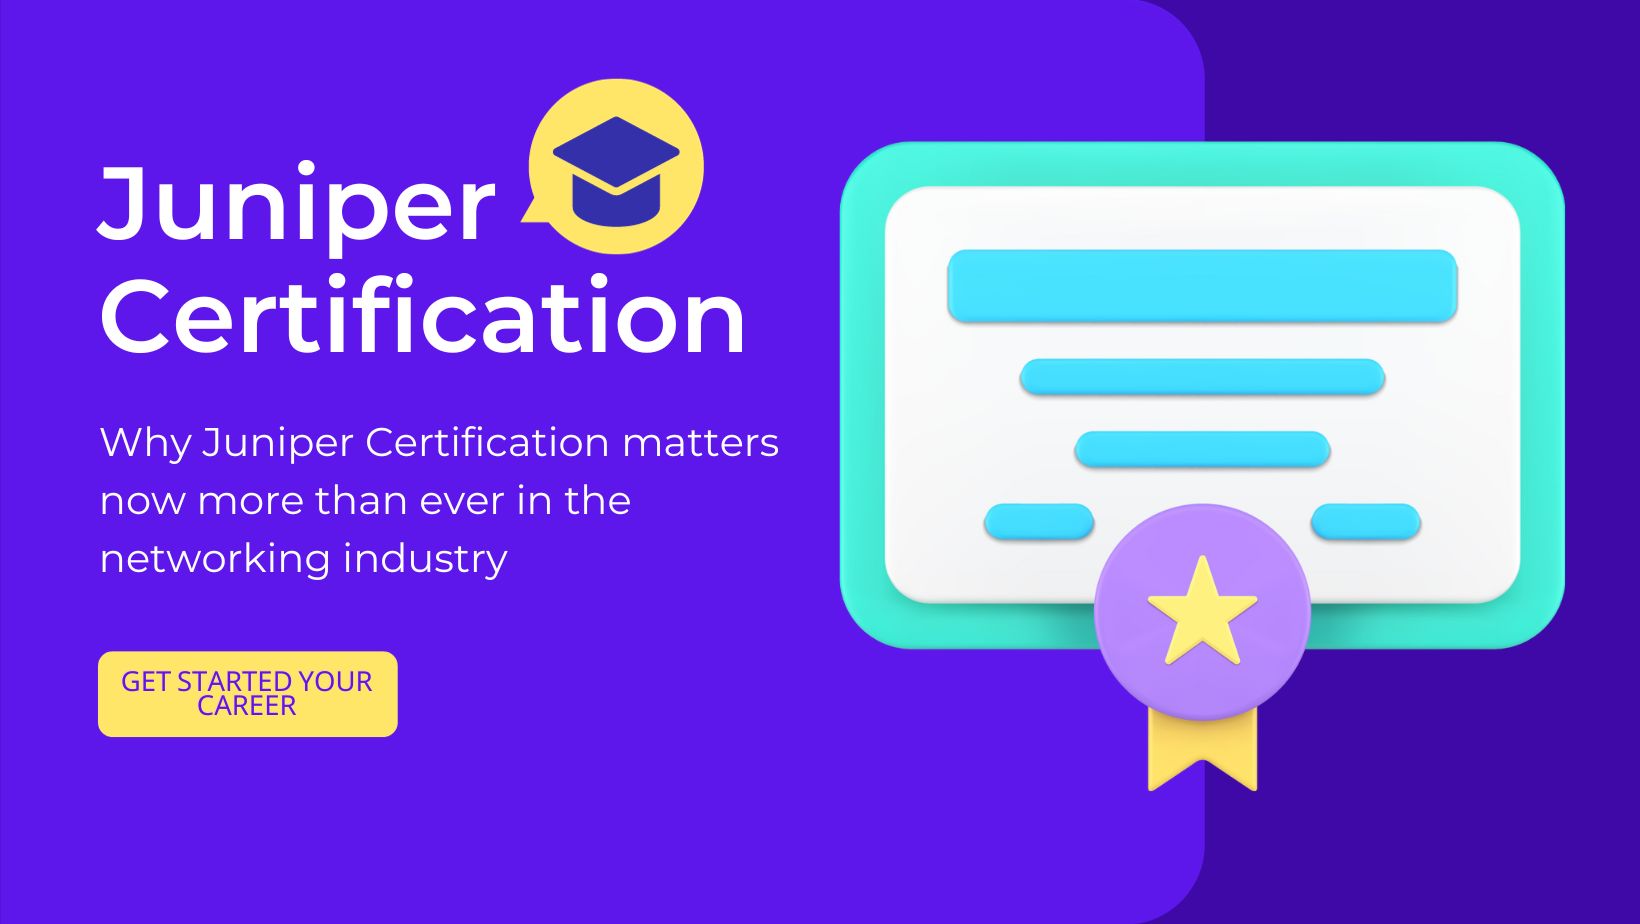 Juniper Certification Provides Validation of Your Skills